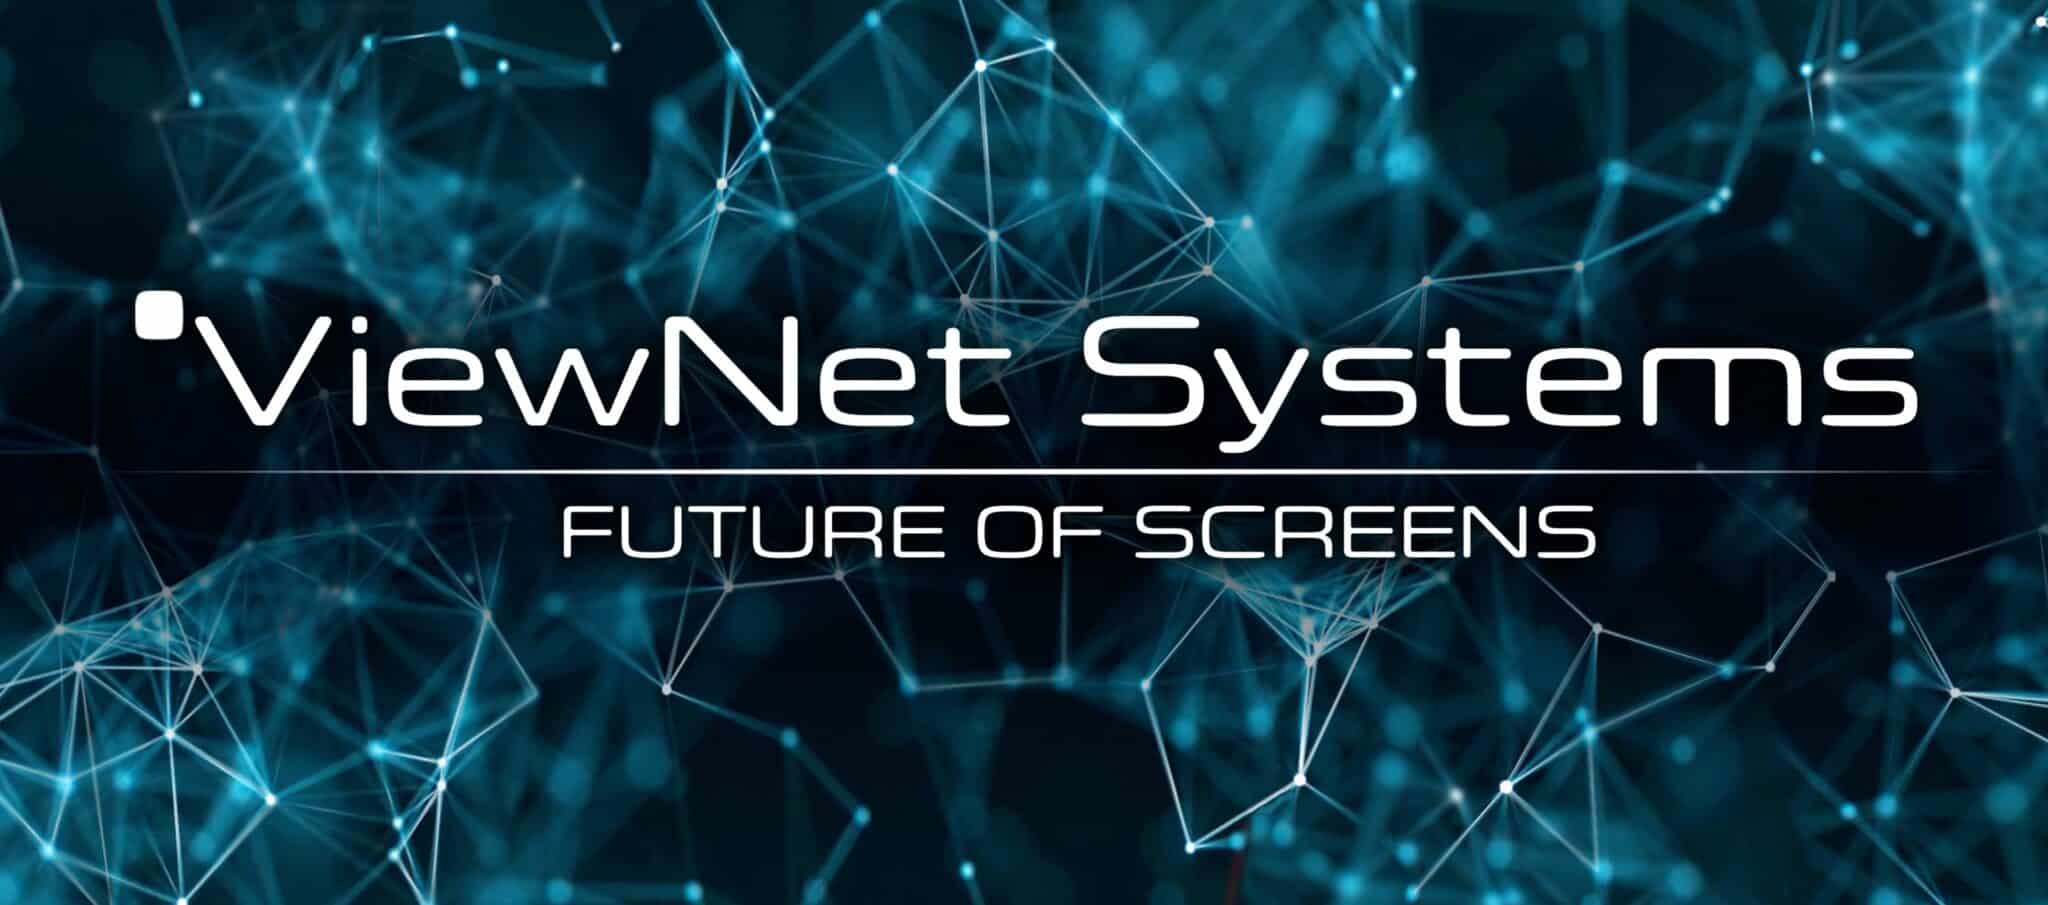 Viewnet Systems Die Zukunft der Bildschirme